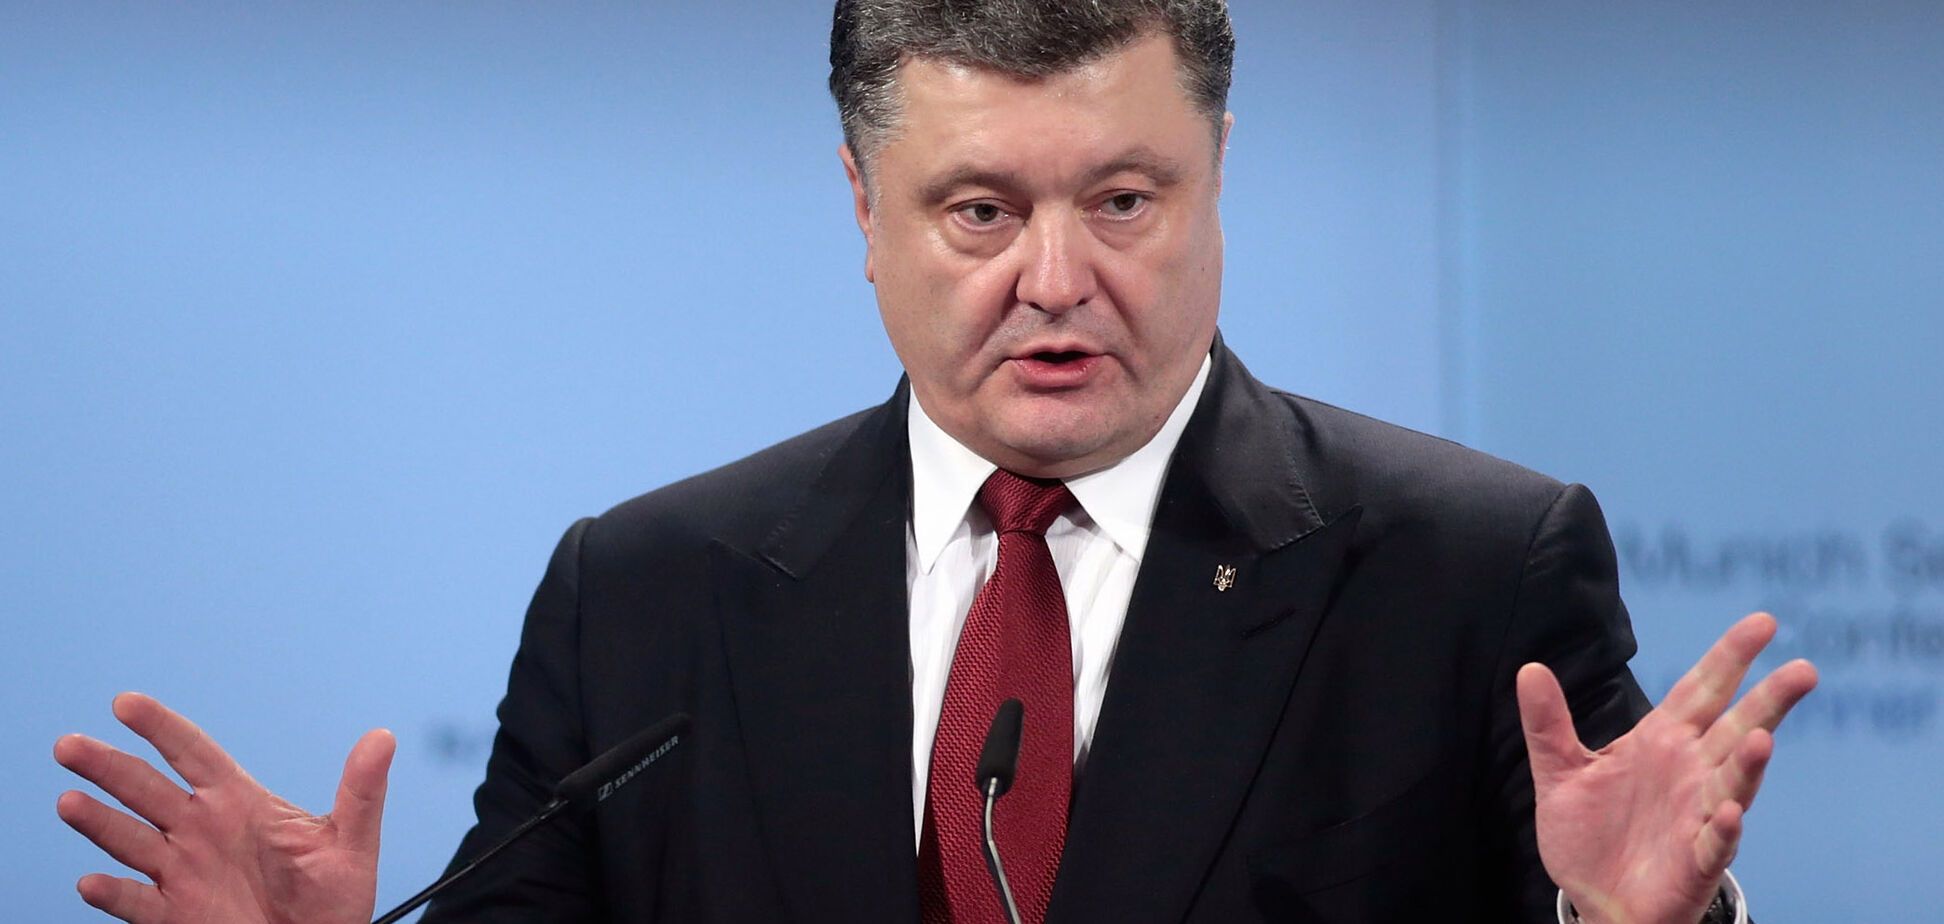 Захиститися від Росії: Порошенко розповів про позицію ЄС і США щодо газопроводу Путіна